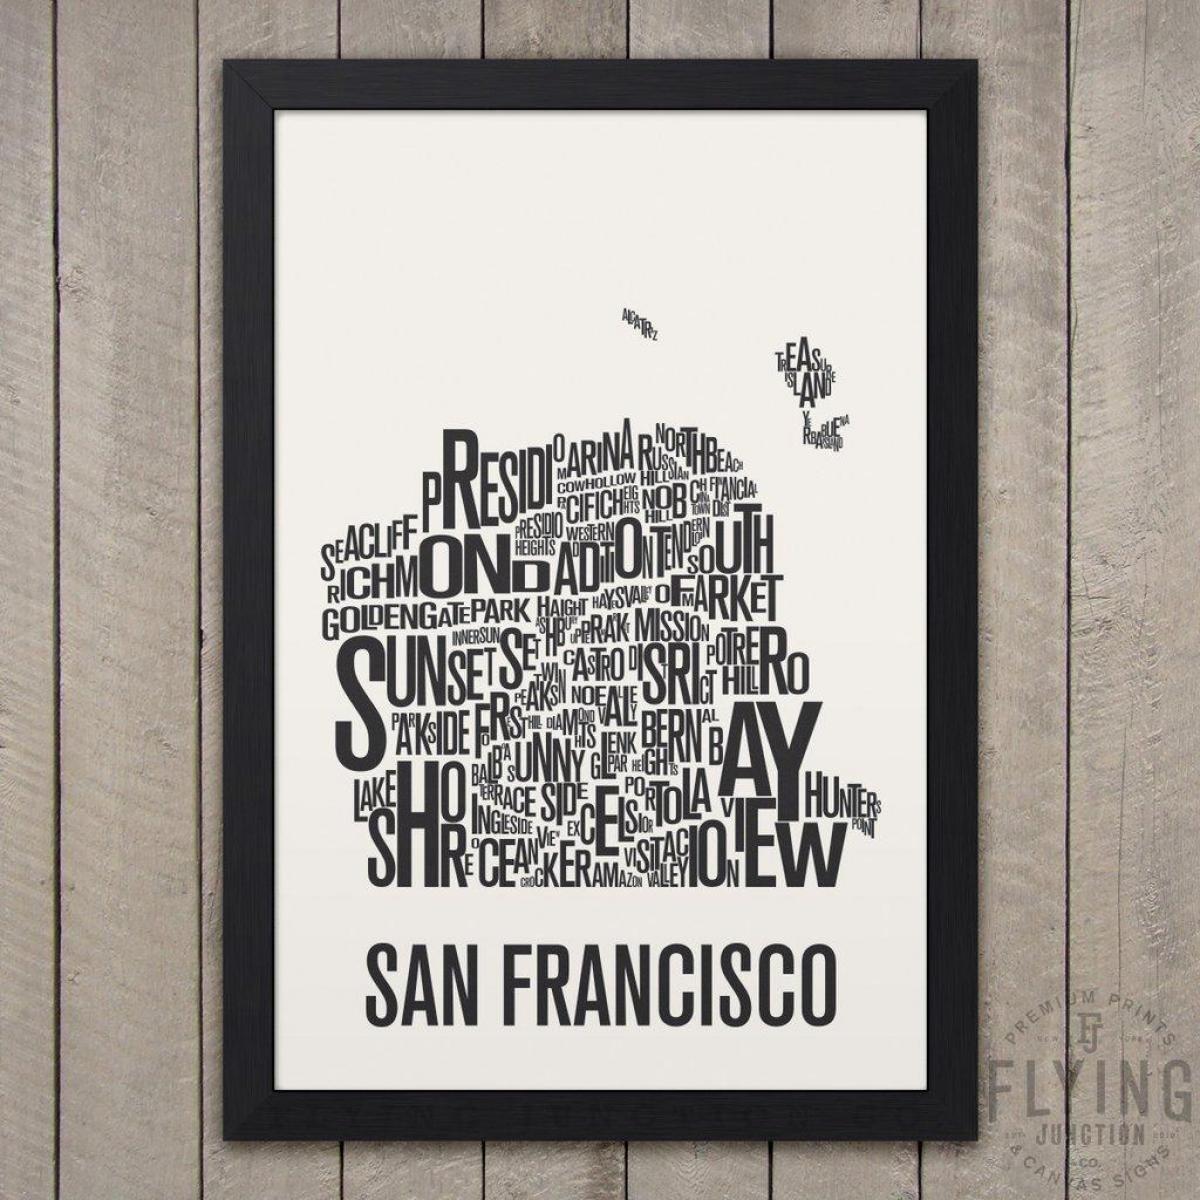 San Francisco Typografie anzeigen